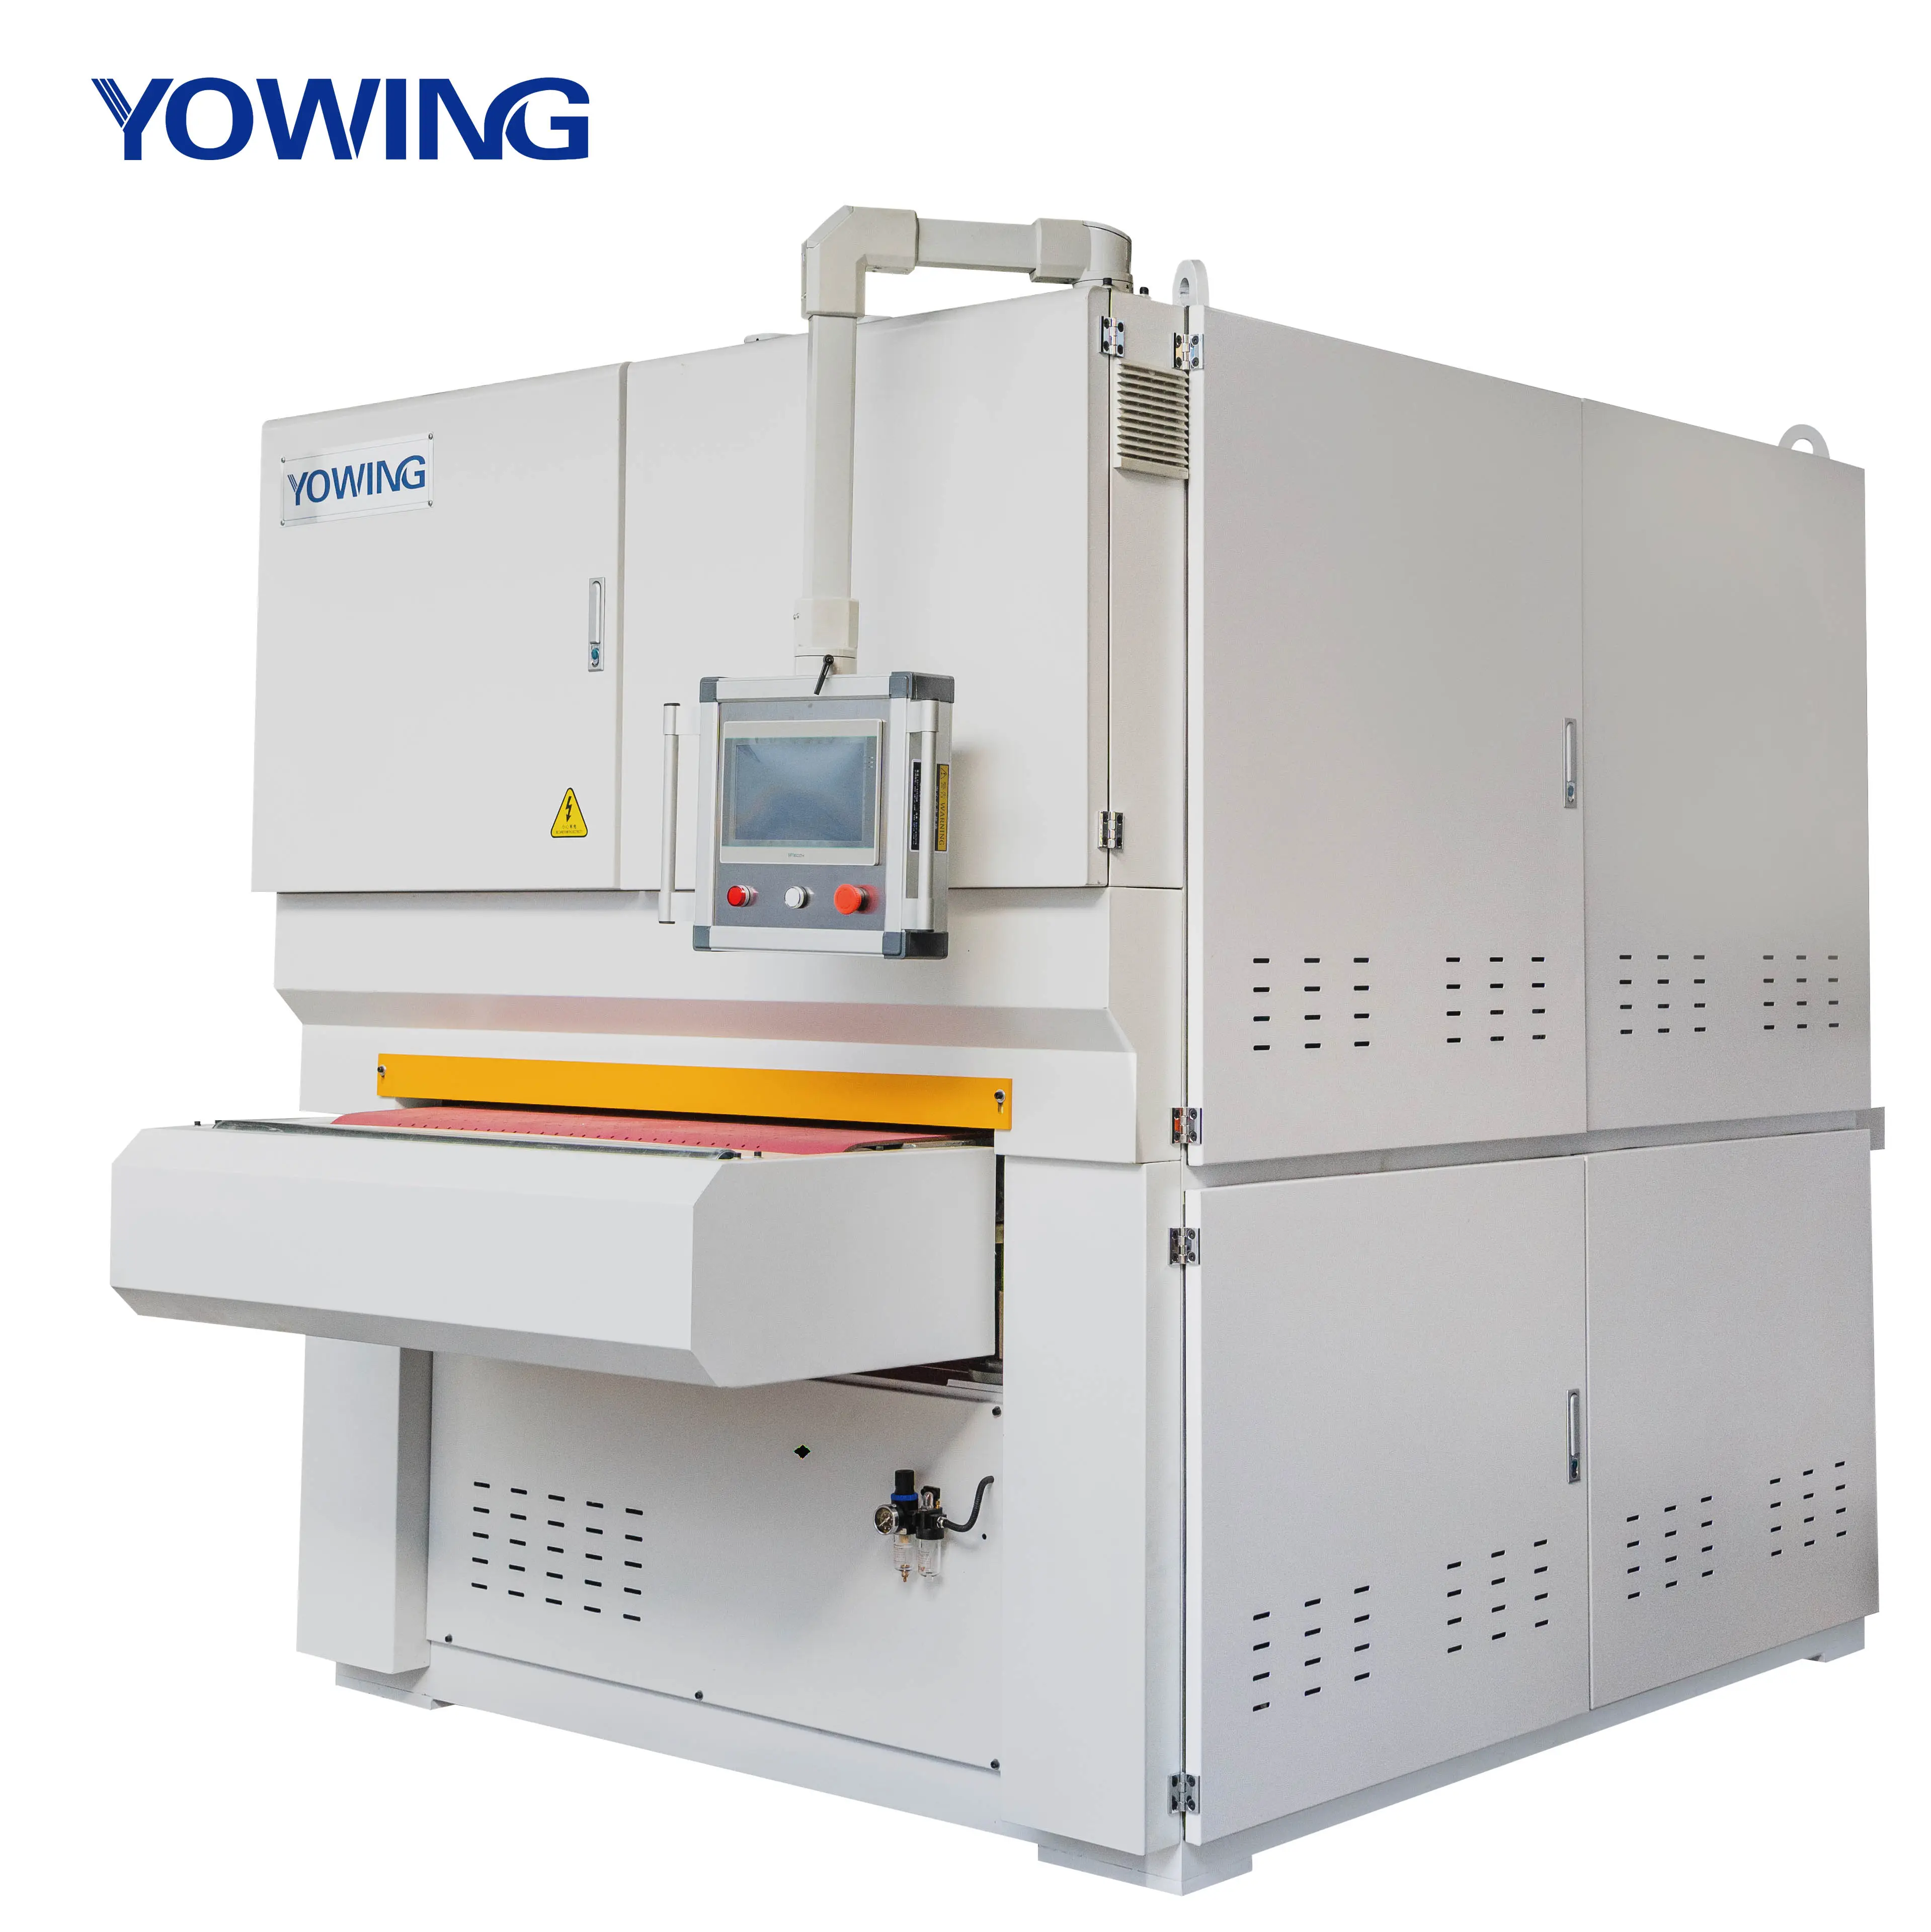 Yowing MD Metal Sheet Fabrication Machine Equipment